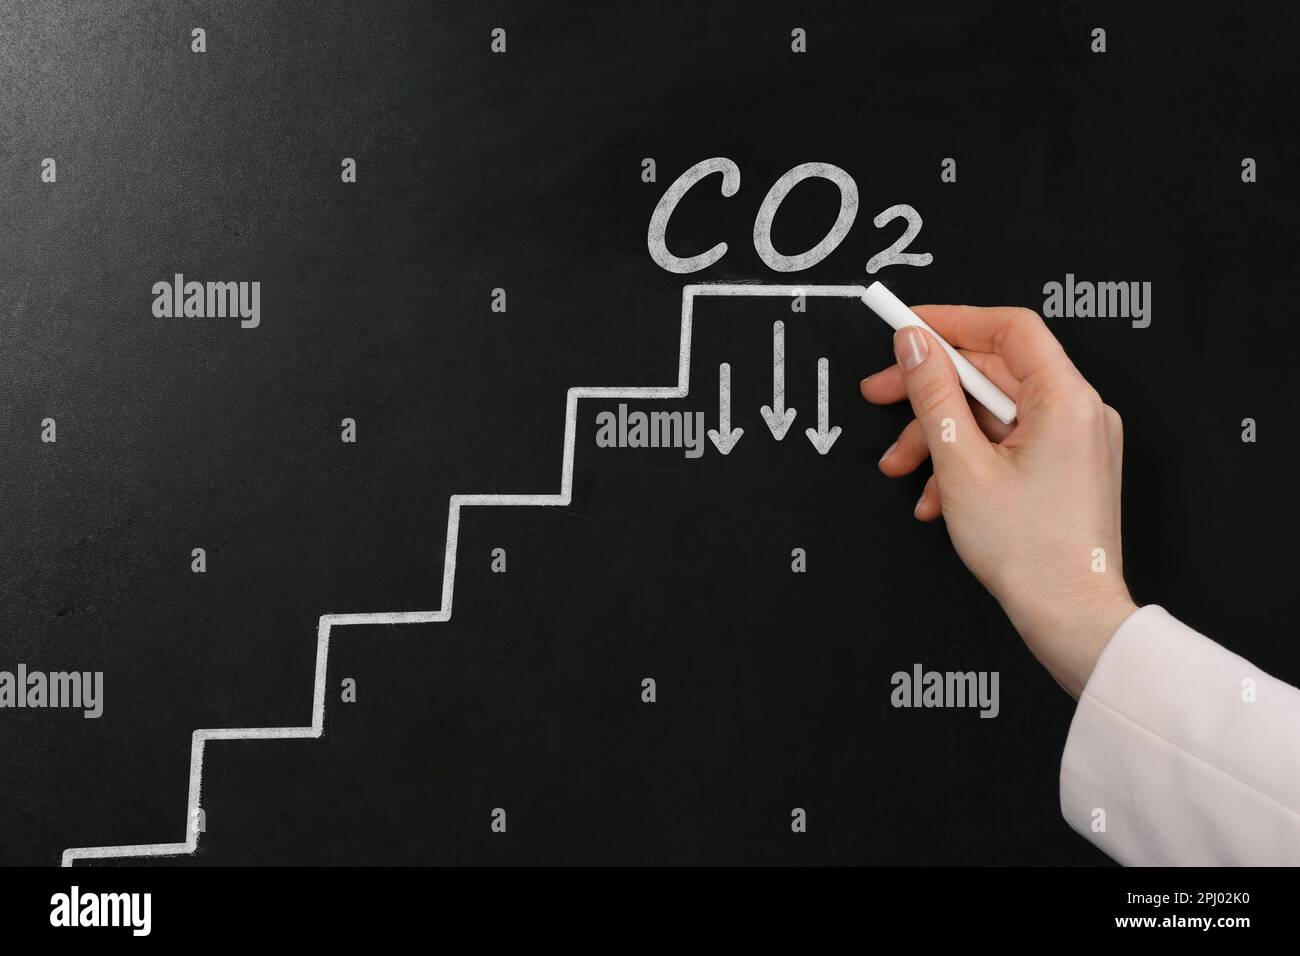 Reduzierung der Kohlenstoffemissionen. Frau, die Treppen und chemische Formel CO2 an der Tafel zeichnet Stockfoto